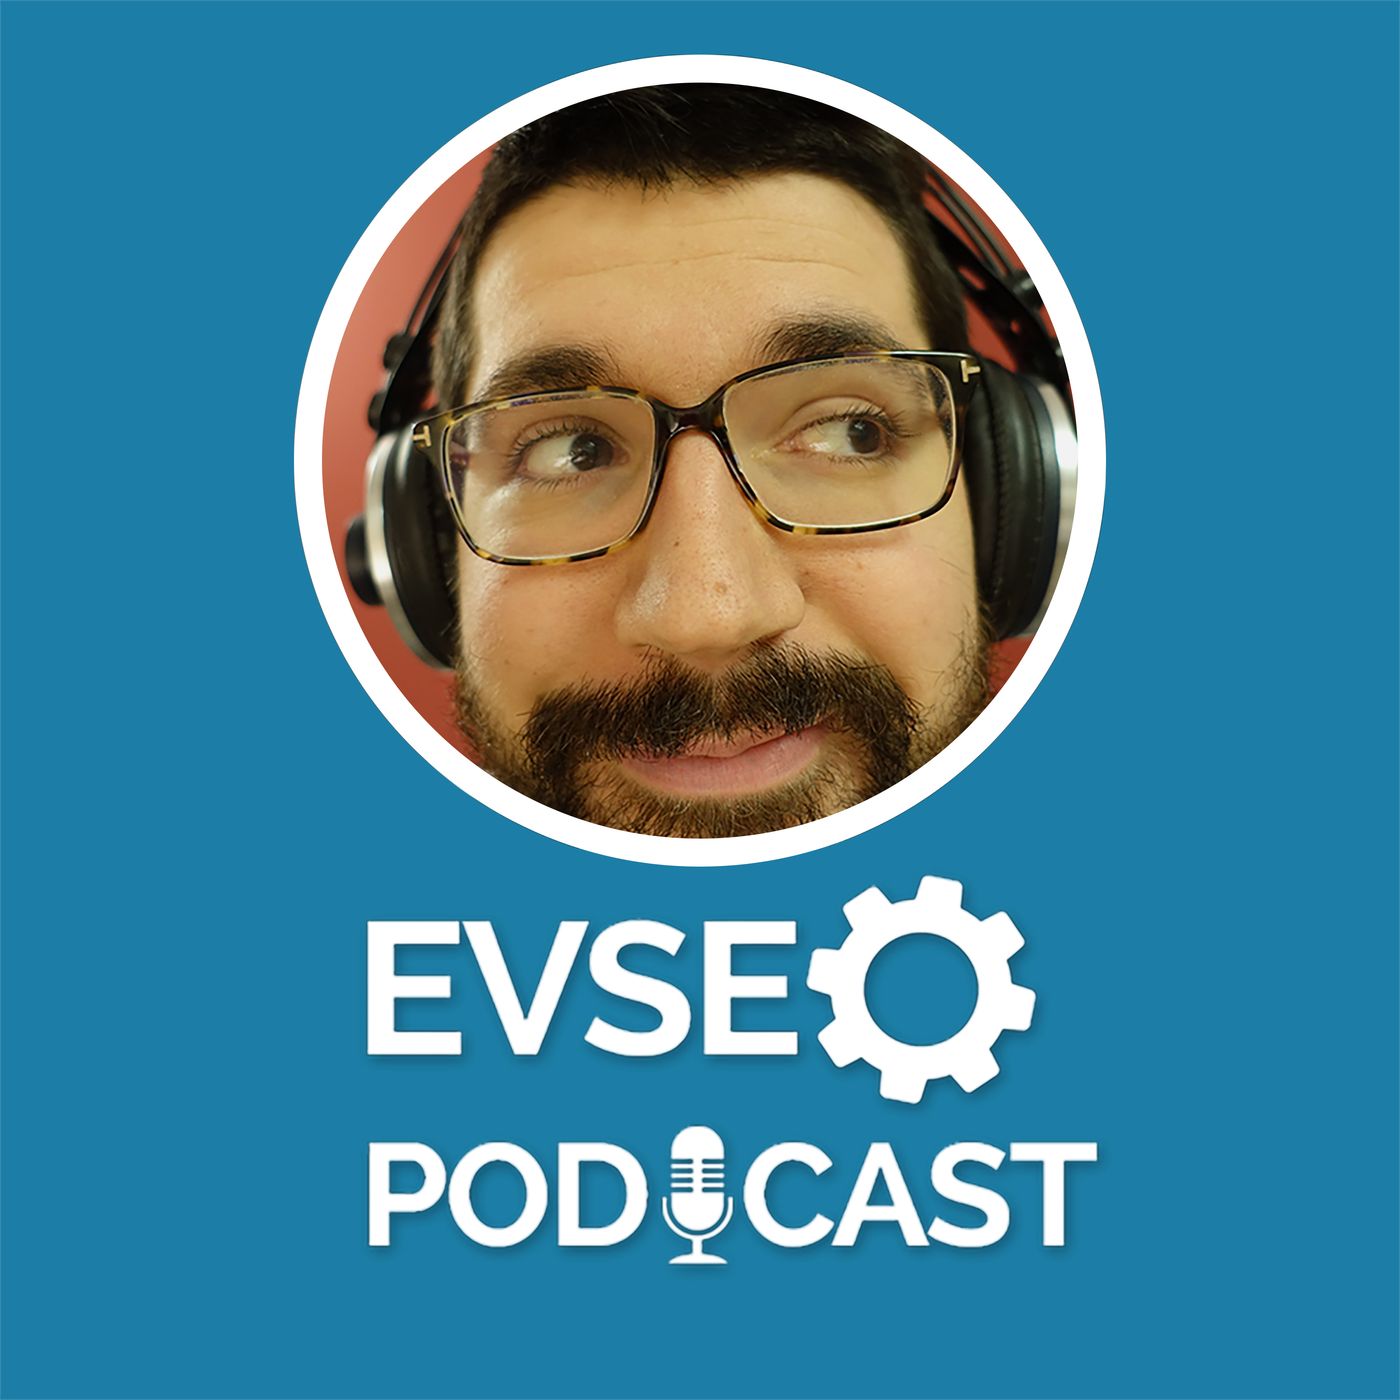 EV SEO Podcast: impara la SEO dove vuoi!